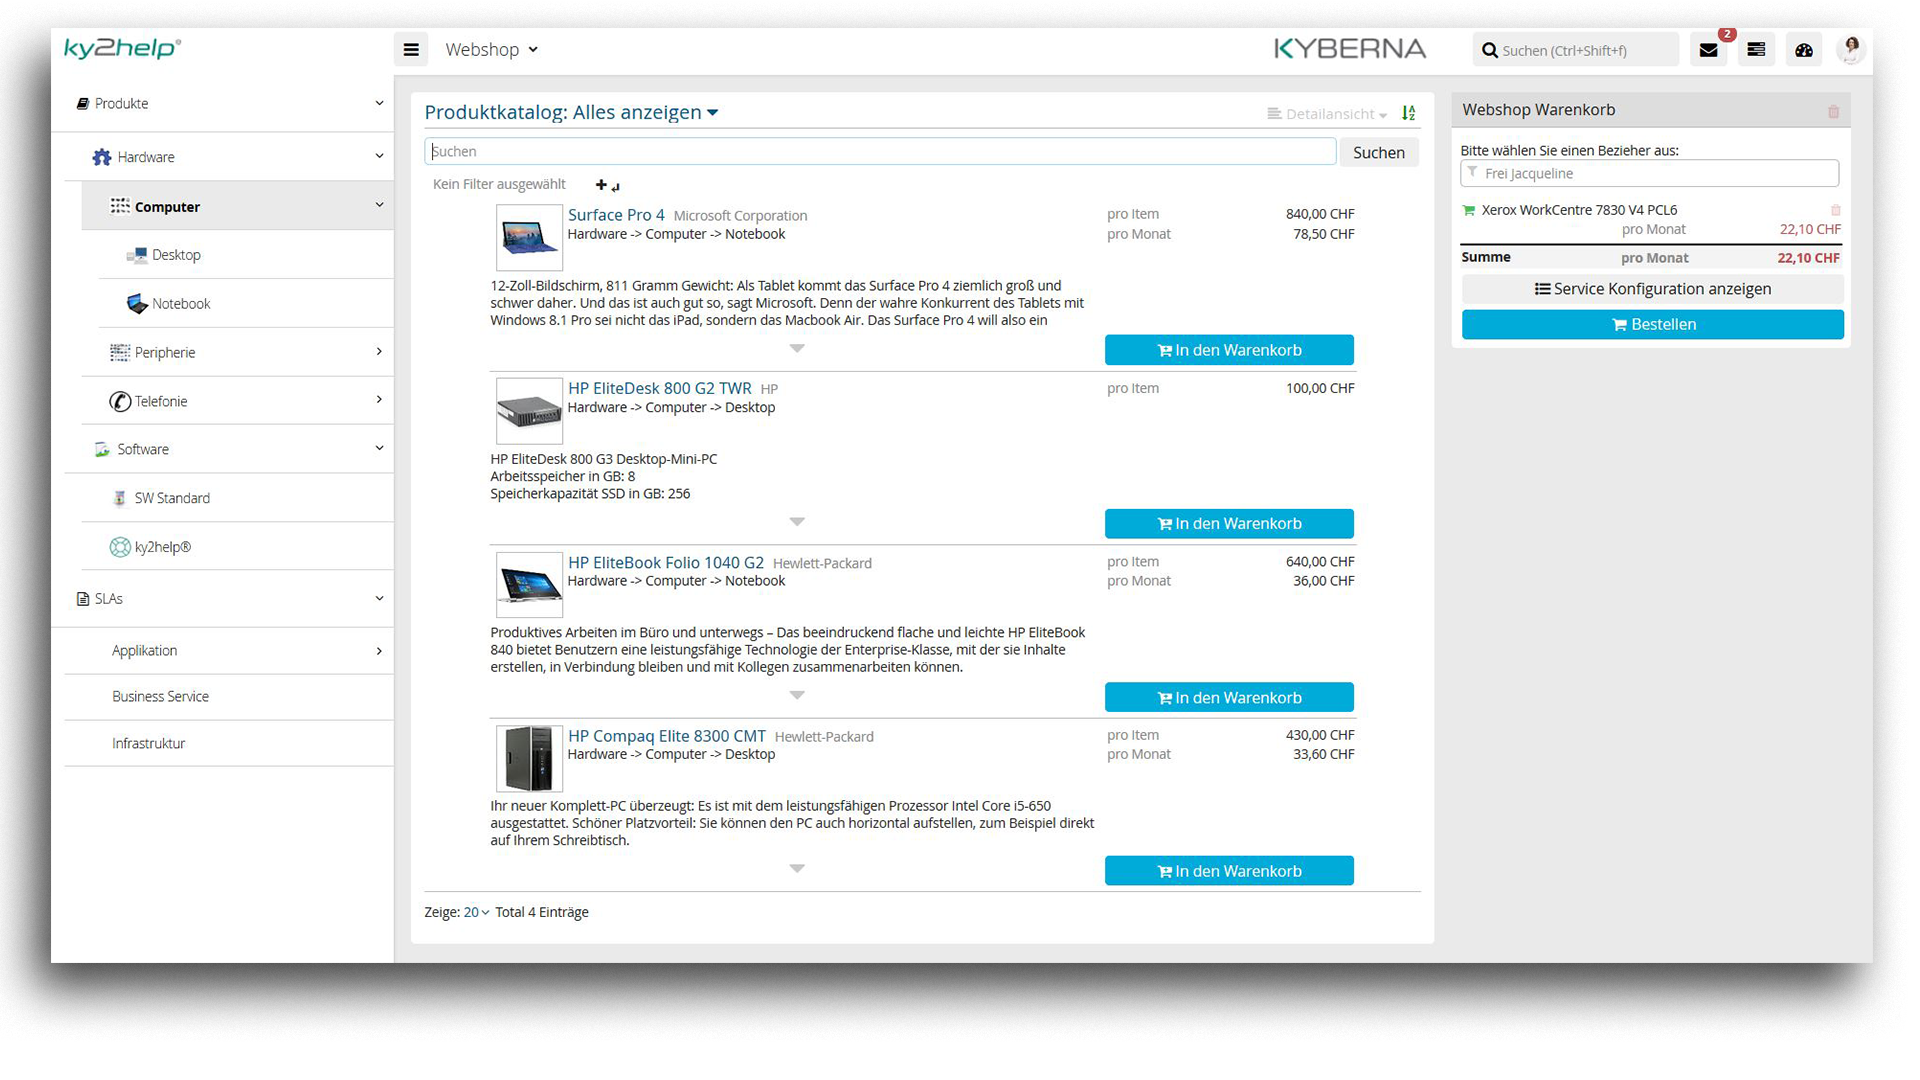 ITSM ky2help - Webshop für Bestellung, Abbestellung und Ersatzbestellung von Produkten & Services